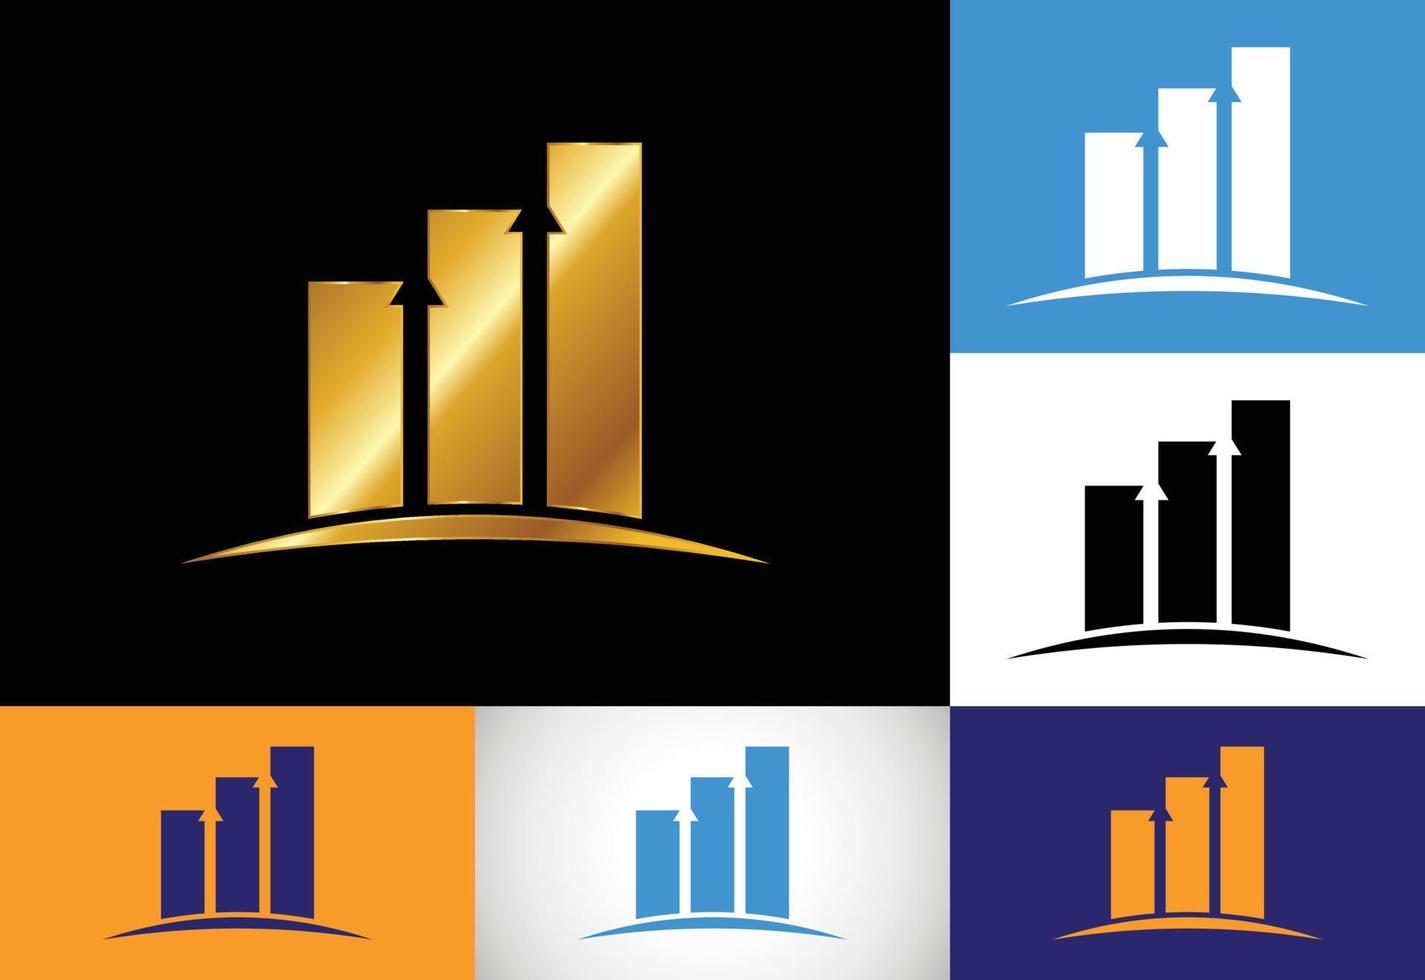 modelo de vetor de design de logotipo de finanças e contabilidade de variação de cores múltiplas